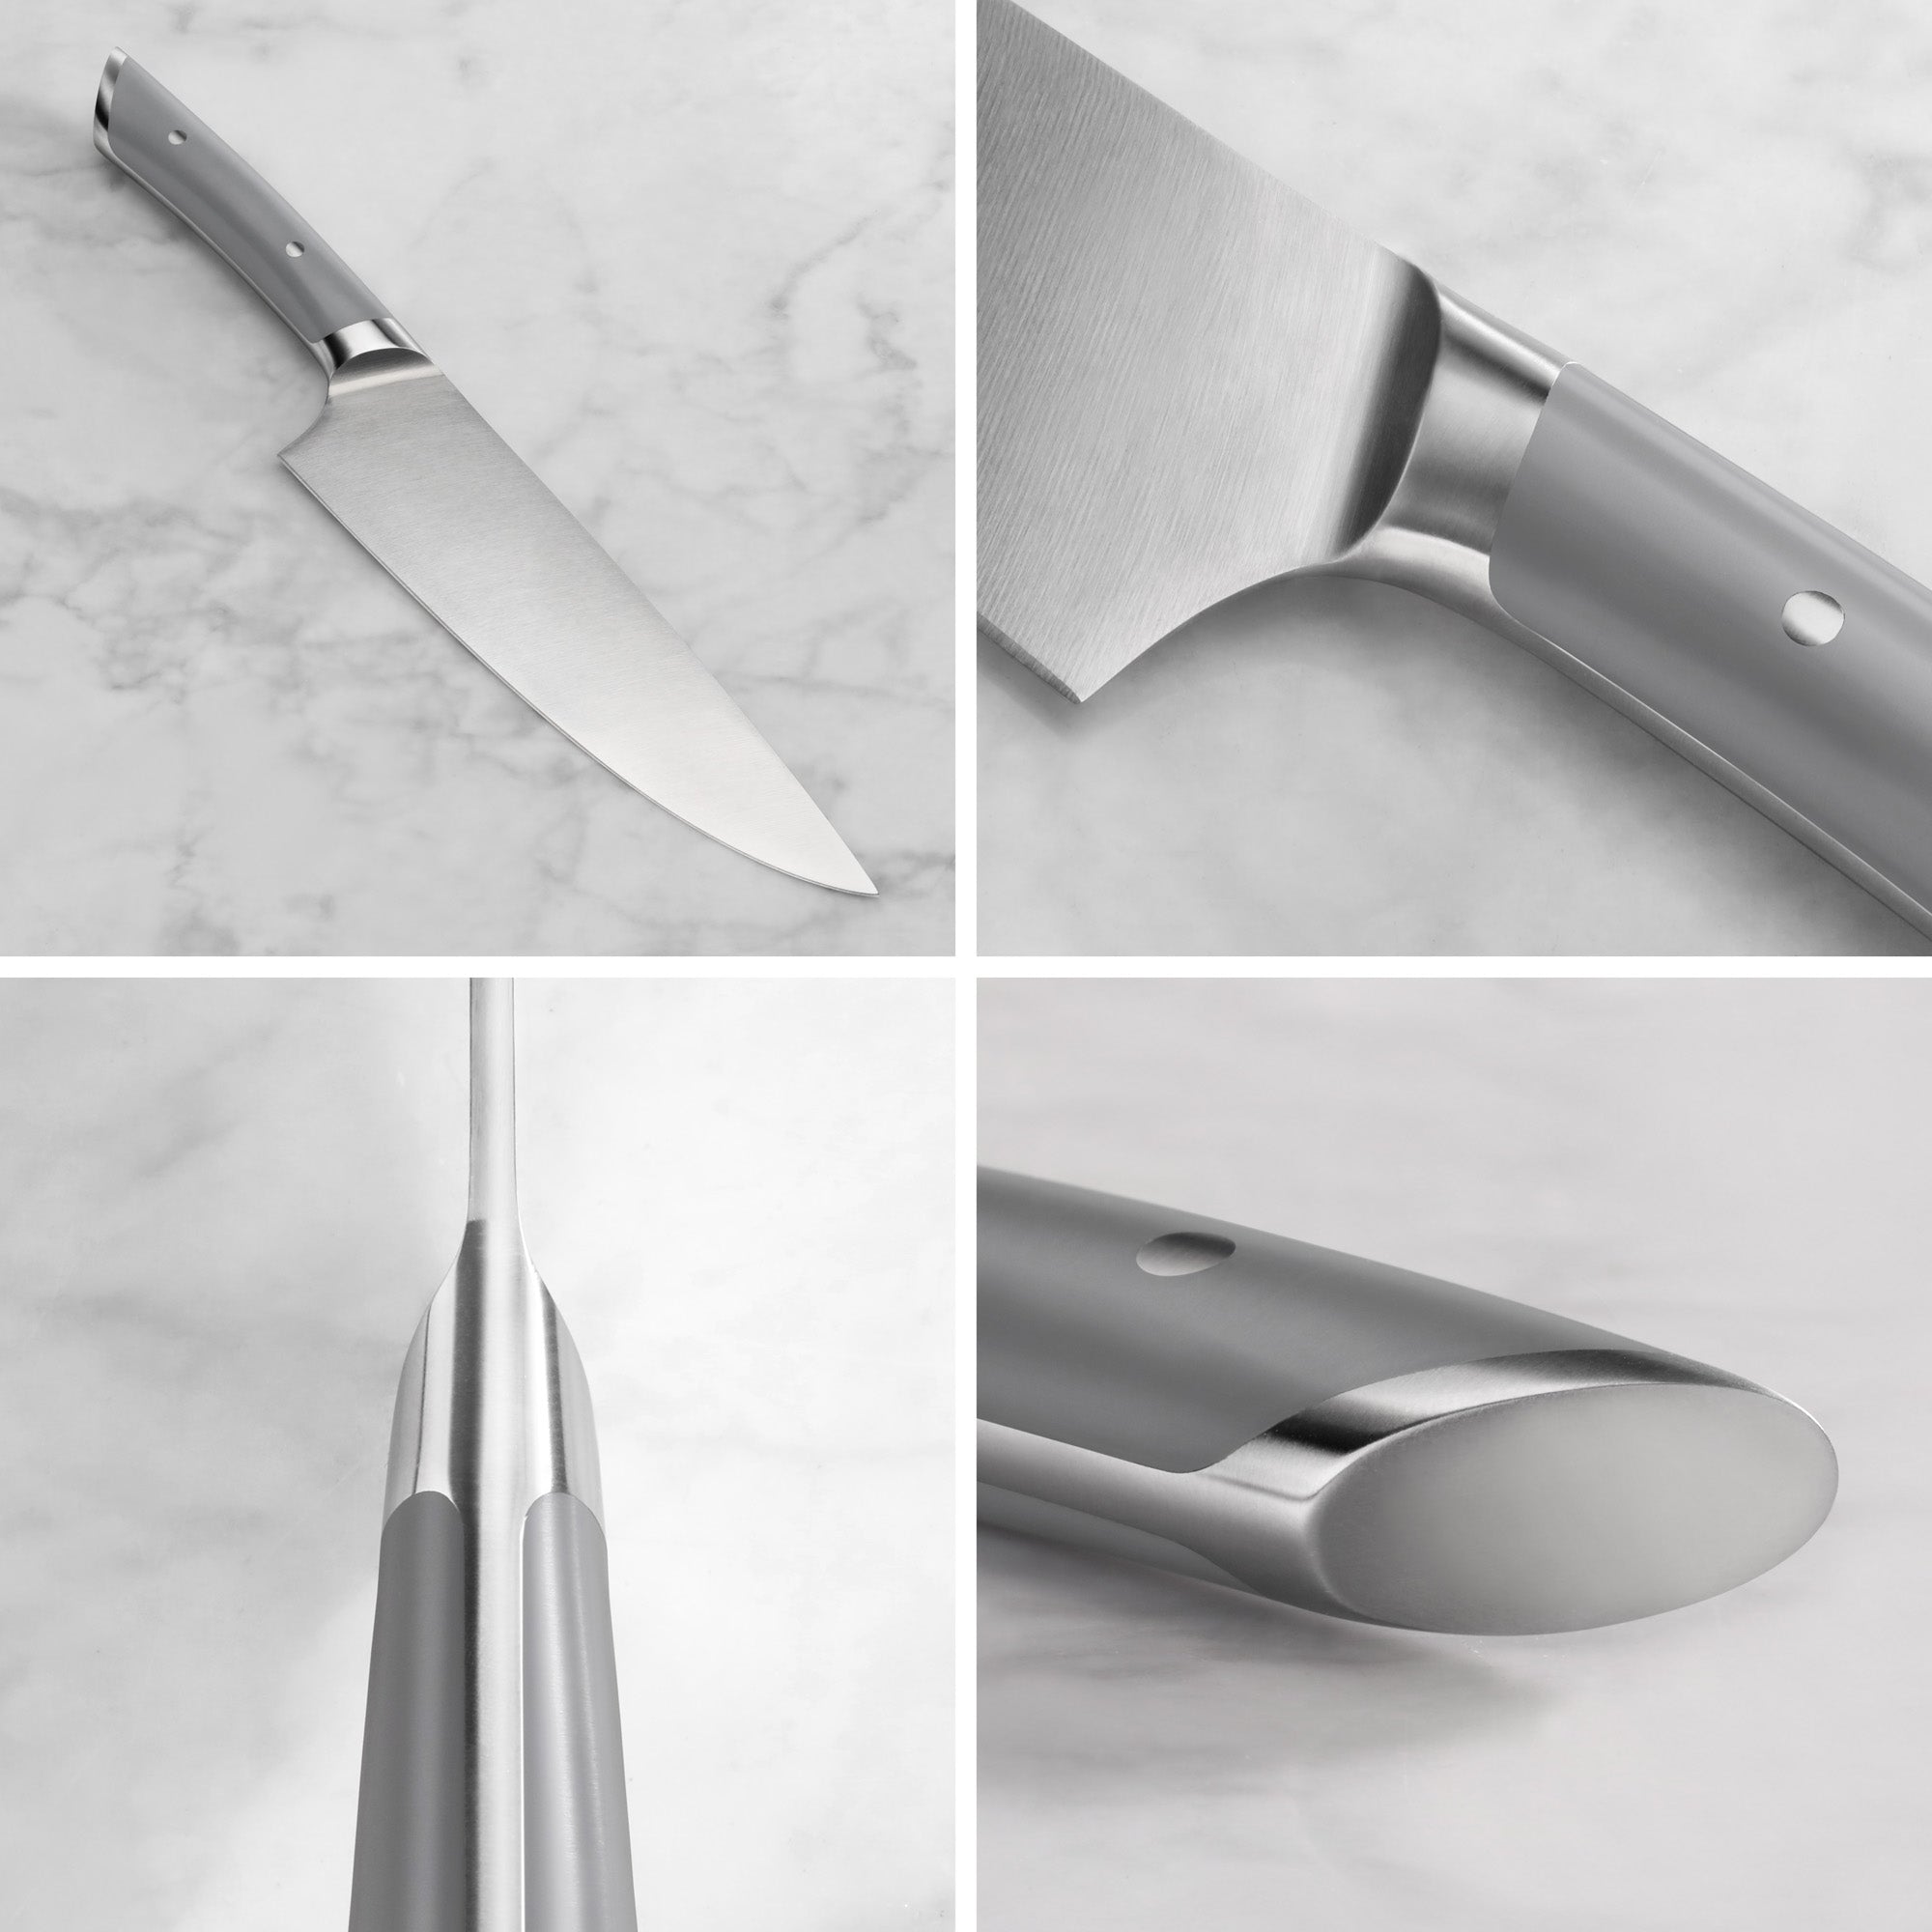 Cangshan Helena 8" Chef's Knife, Gray